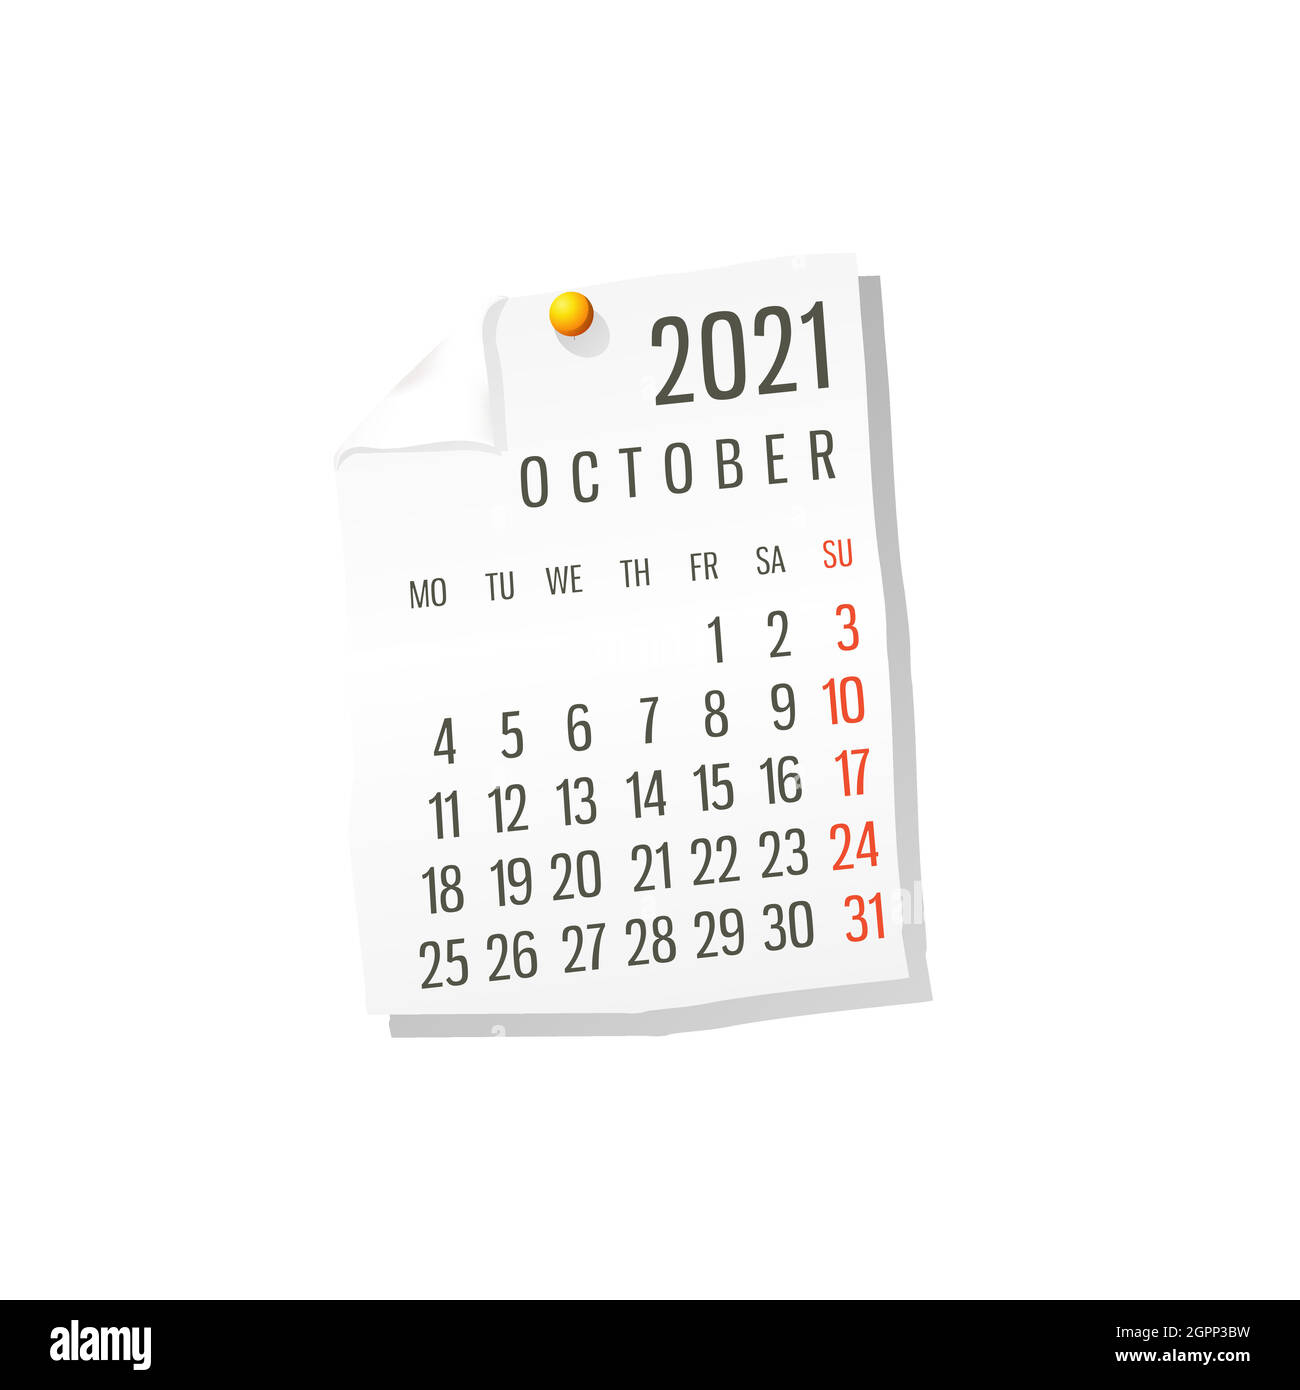 2021 October vector calendar Stock Vector